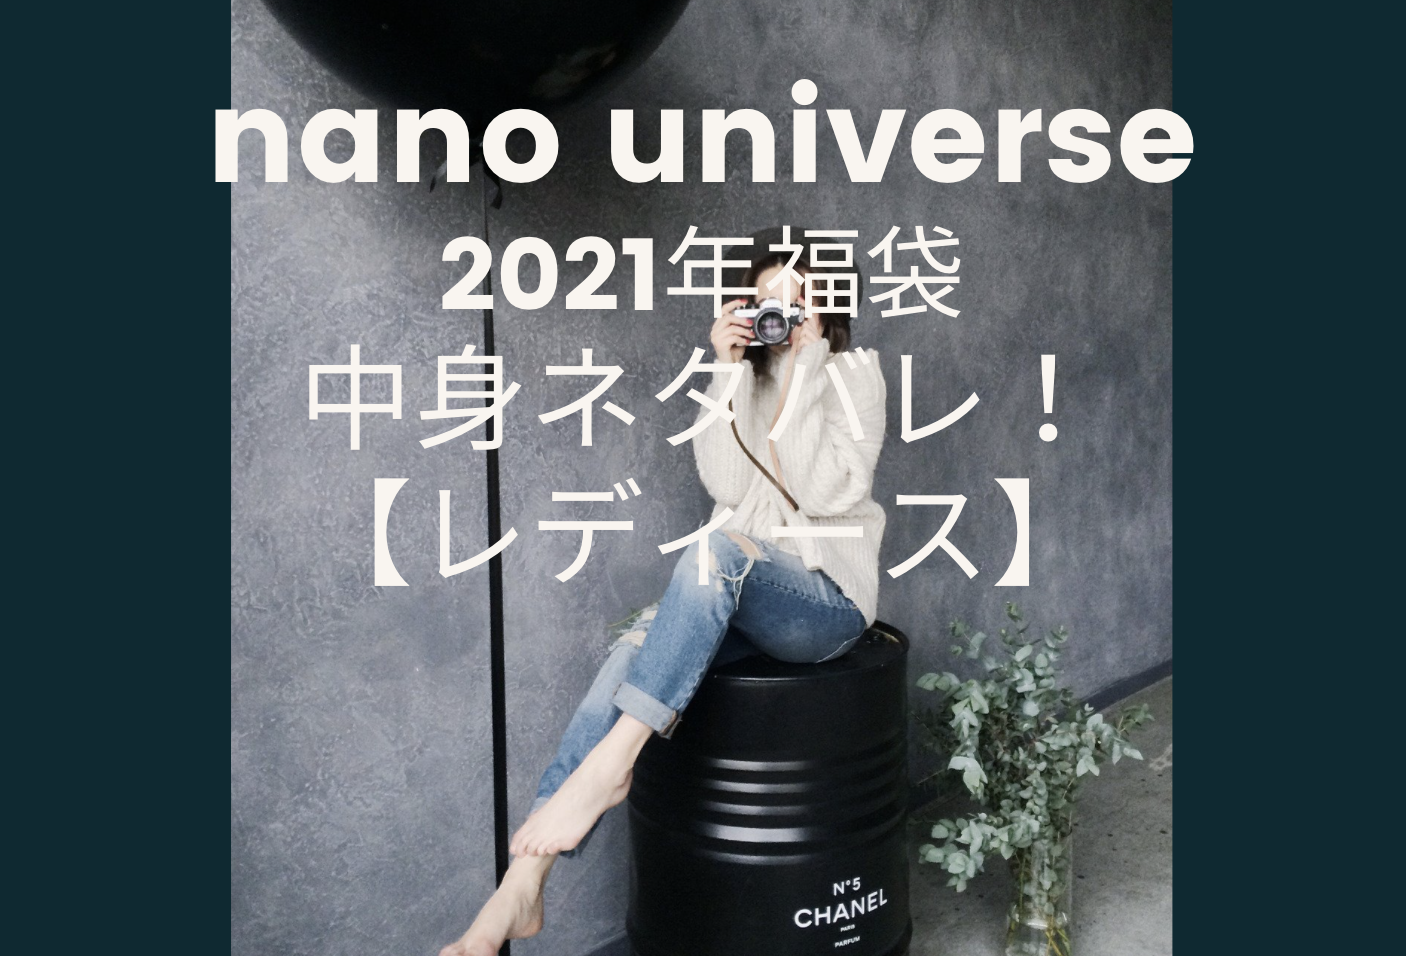 Nano Universe福袋 メンズ 21の中身ネタバレ 西川ダウン入りの予約方法は バレンタイン21